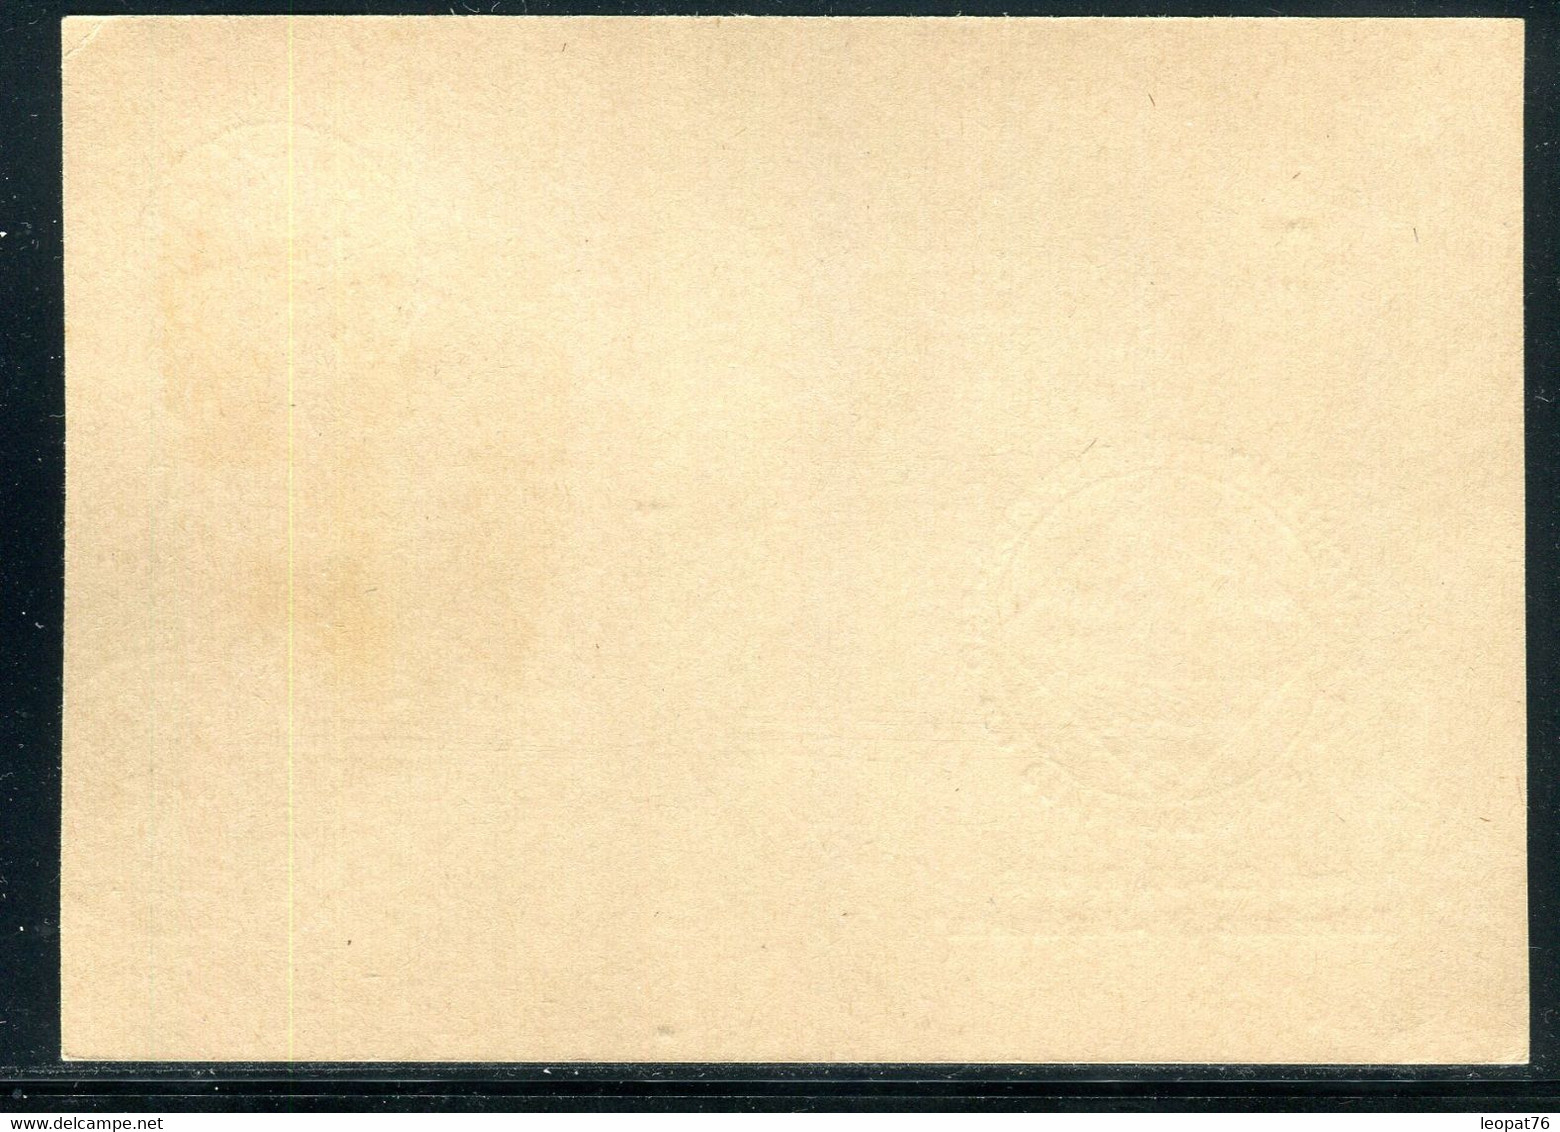 Allemagne - Cachet Sur Jeux D’Échecs Sur Entier Postal De Postdam En 1988 -  F 192 - Cartes Postales - Oblitérées